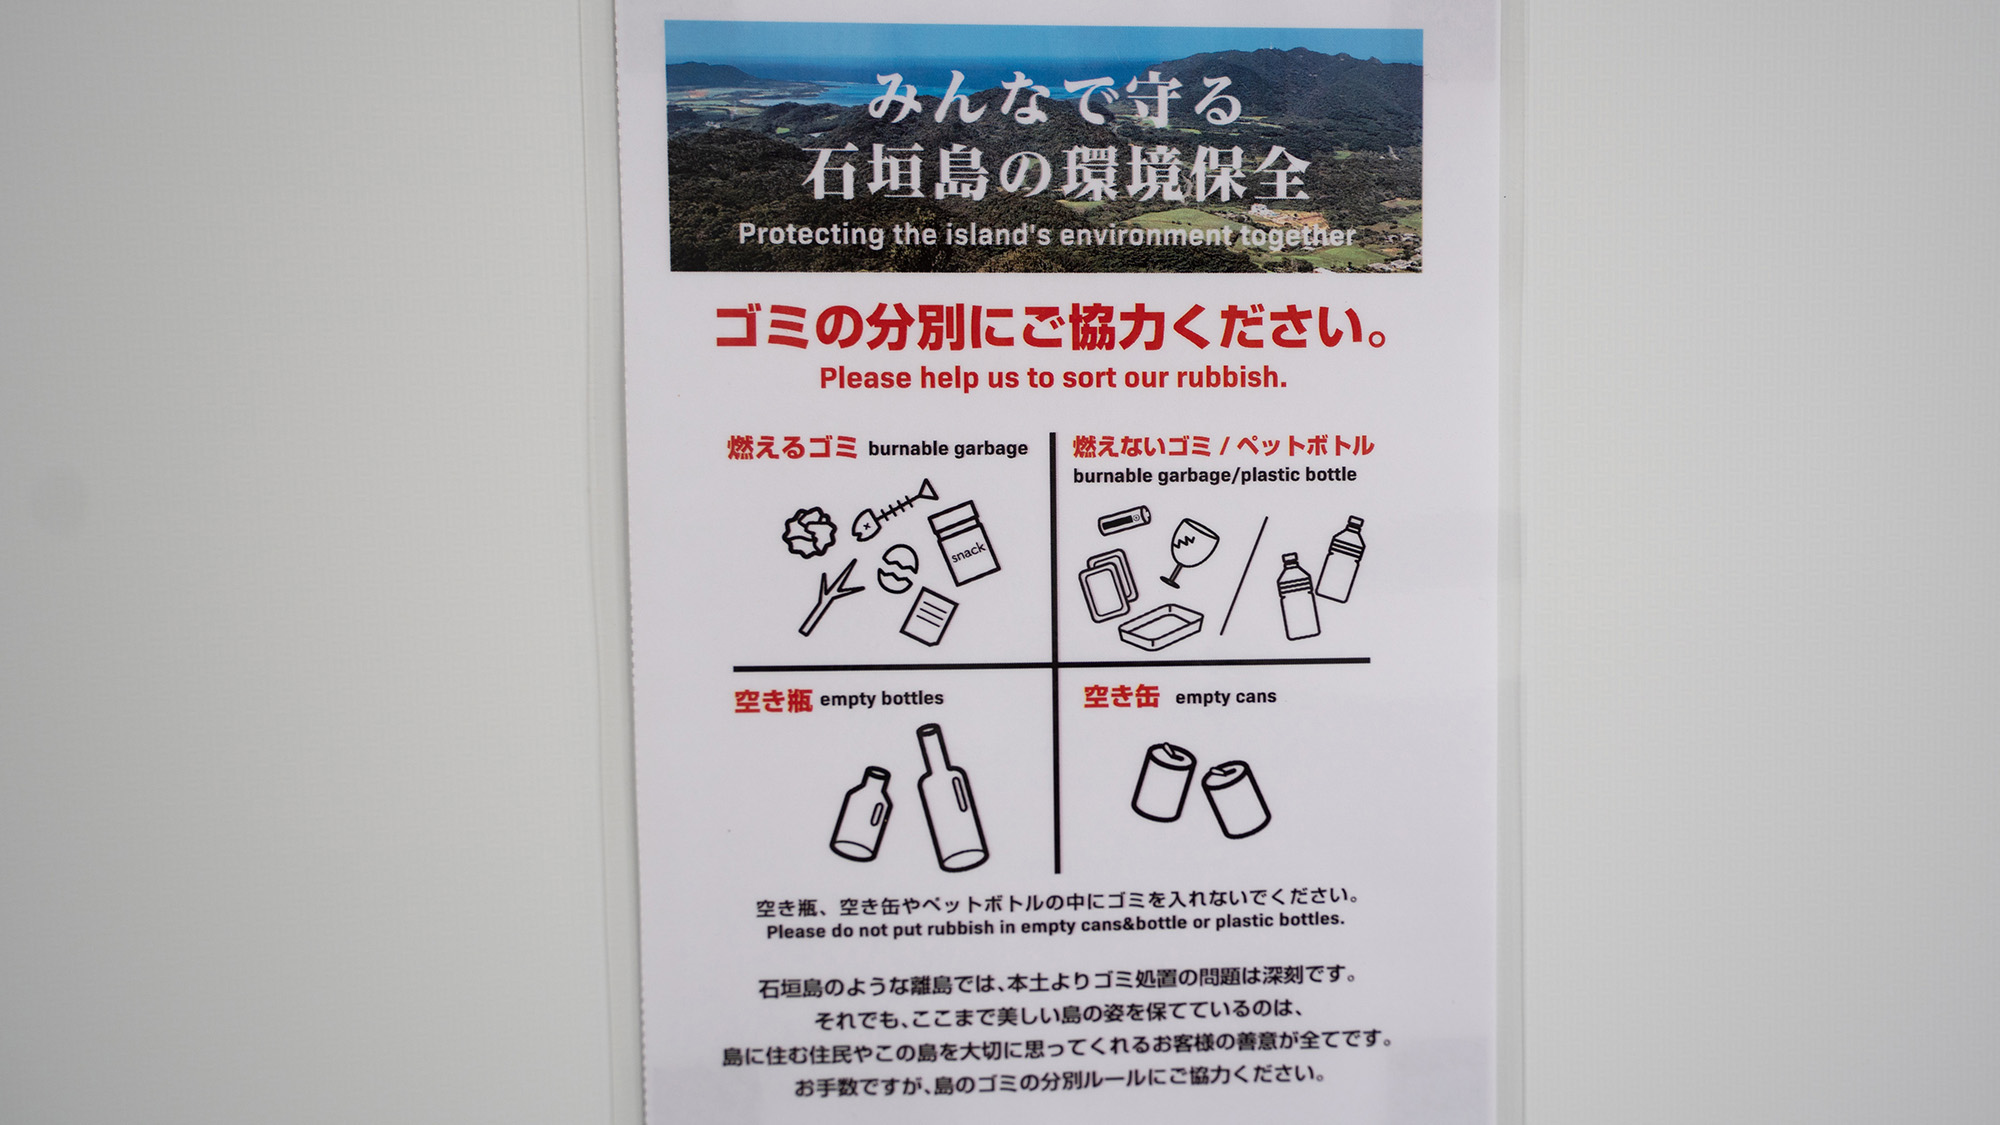 ・【ご案内】当施設は石垣島の環境保全に力を入れております。ご協力をお願いします